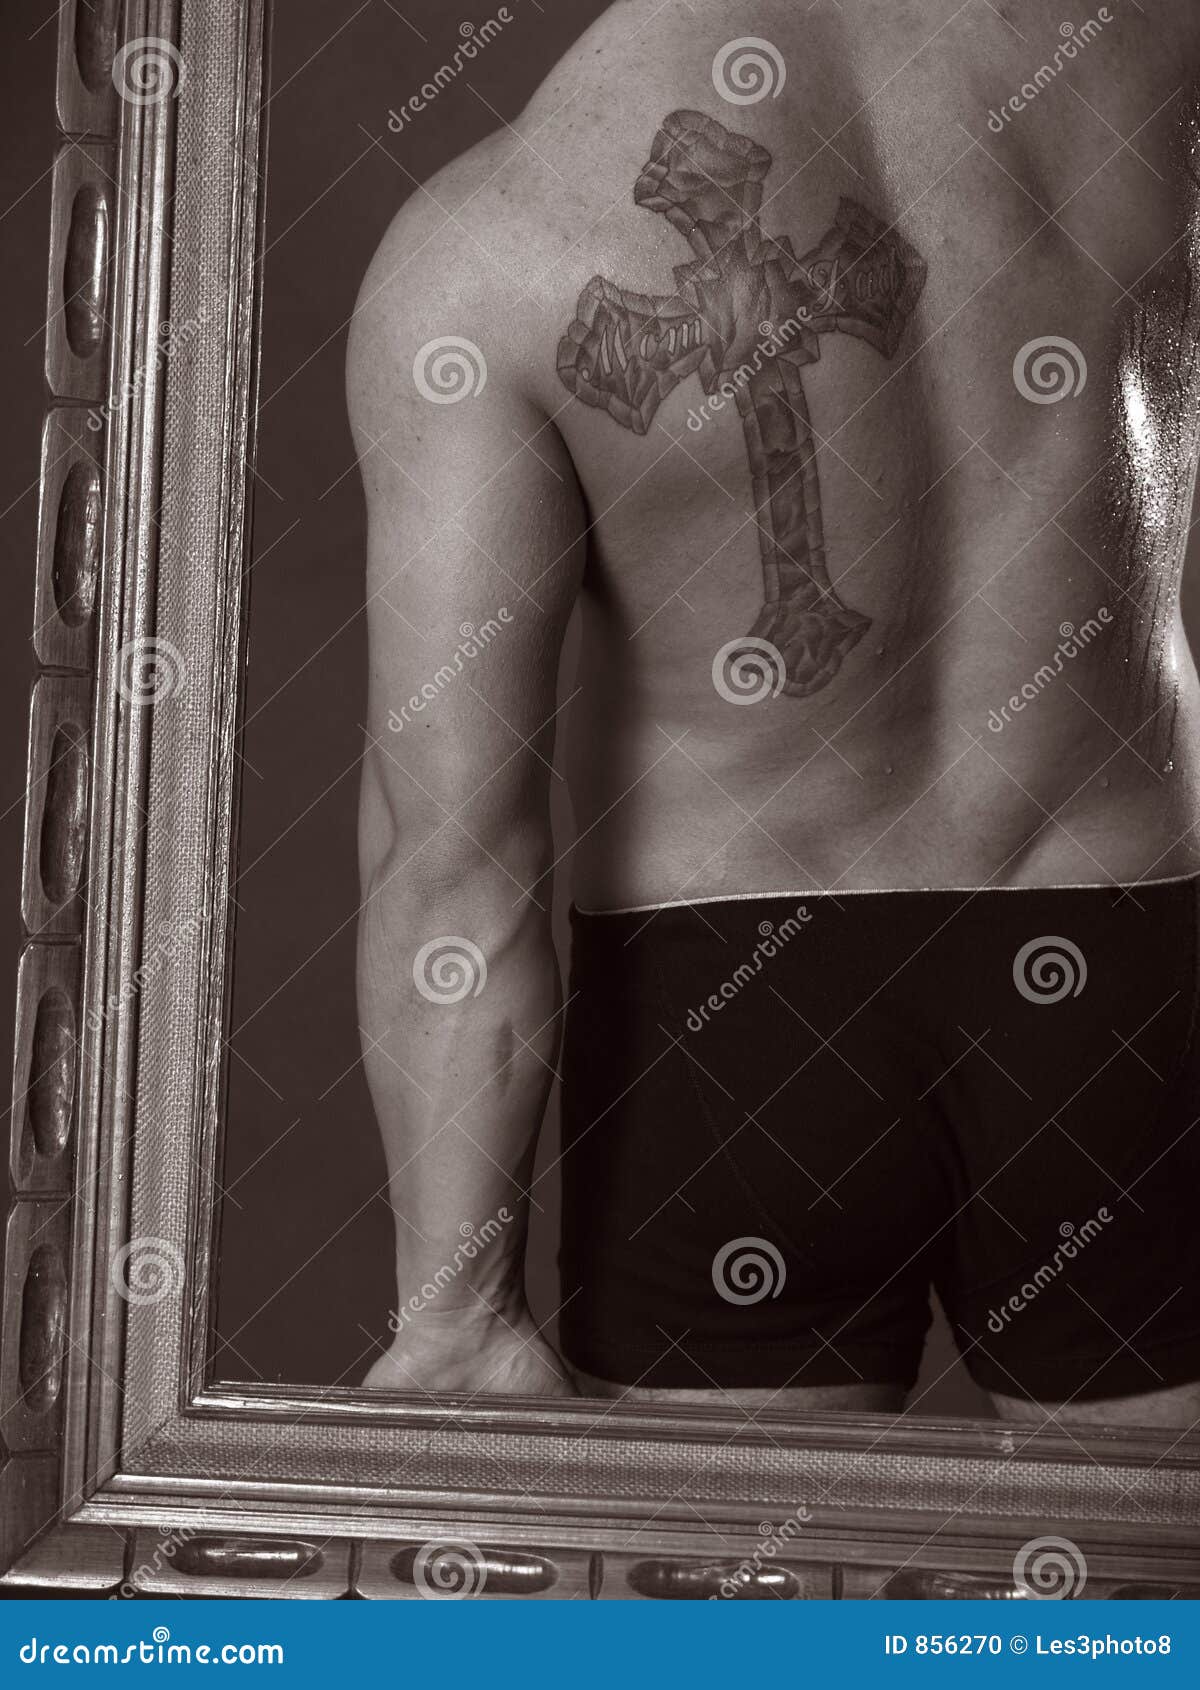 cross tattoo designs for men on back